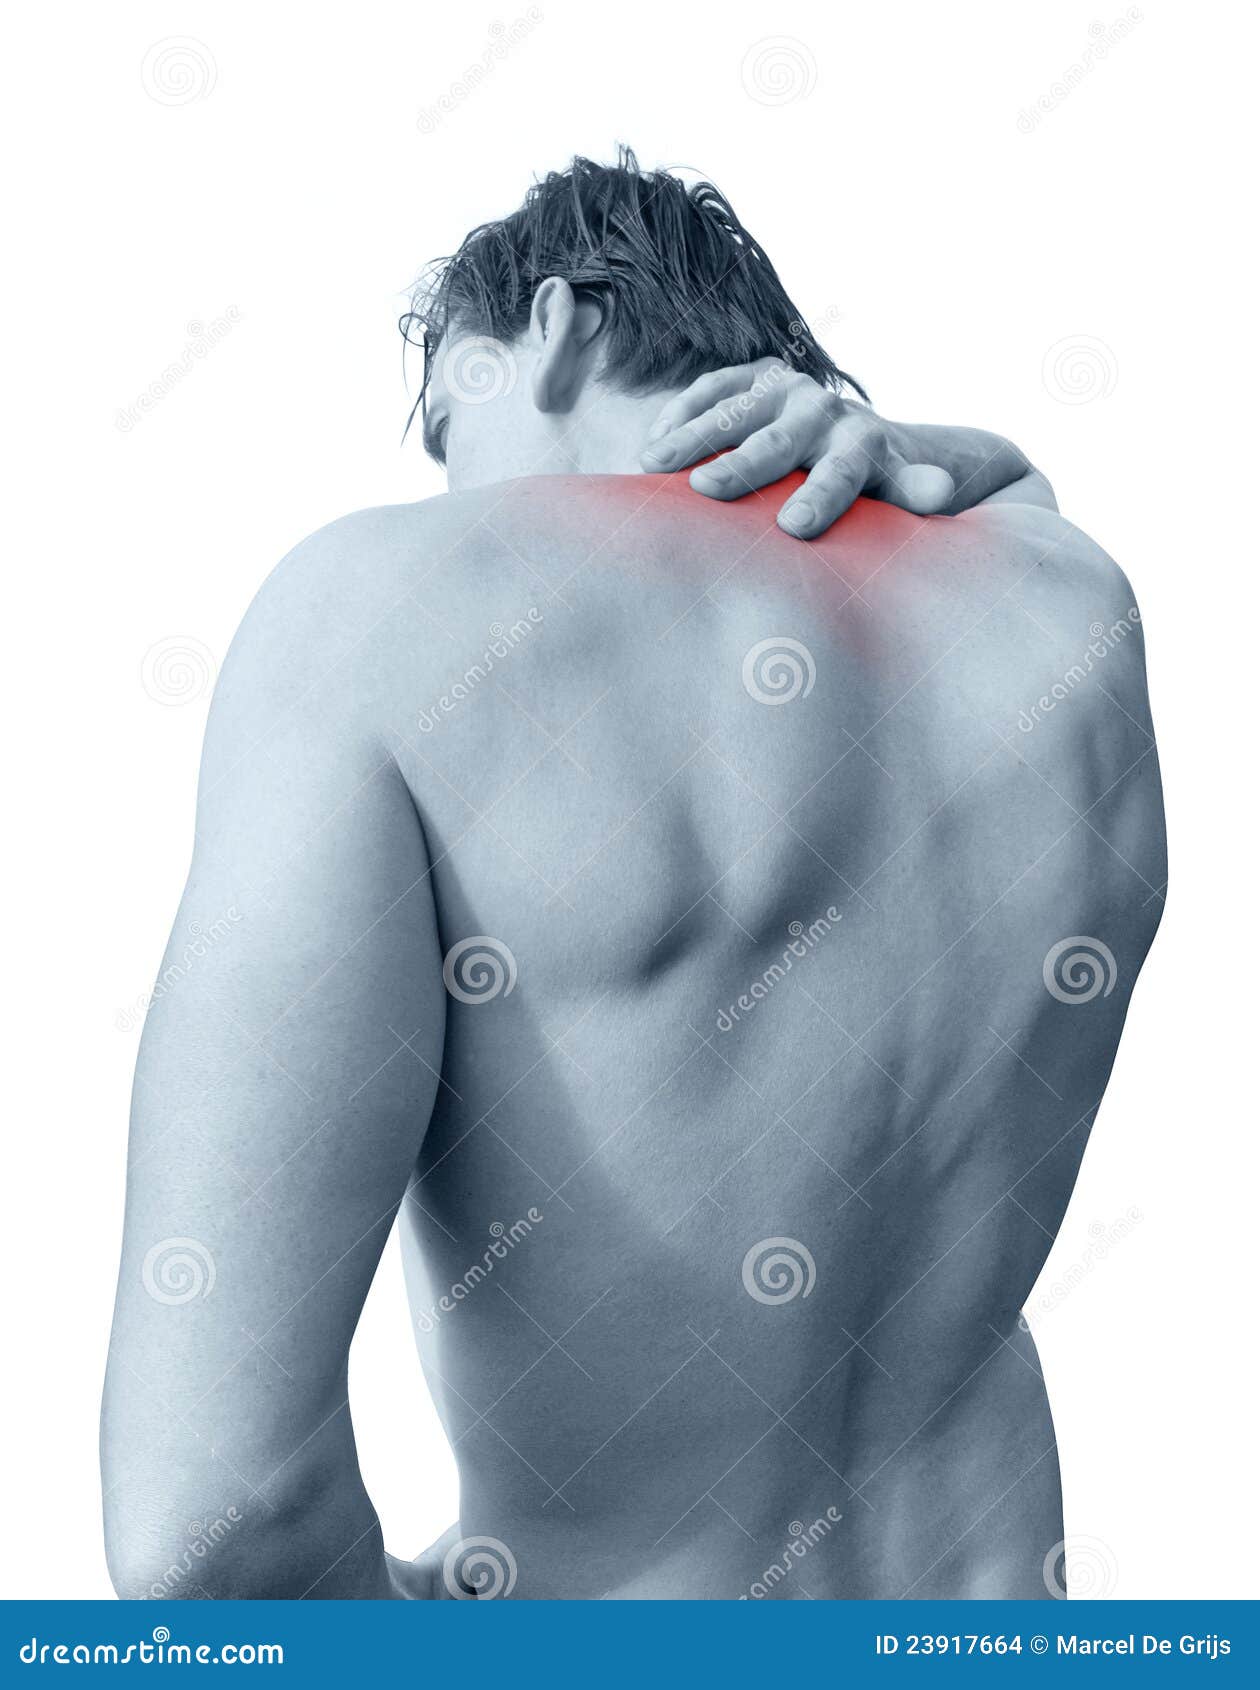 Болит правое плечо отдает в шею. Боль в плече отдает в шею и голову. Болит плечо и отдает в шею и голову. Мышечная боль в шее таблетки. Боль в плече отдает в голову.